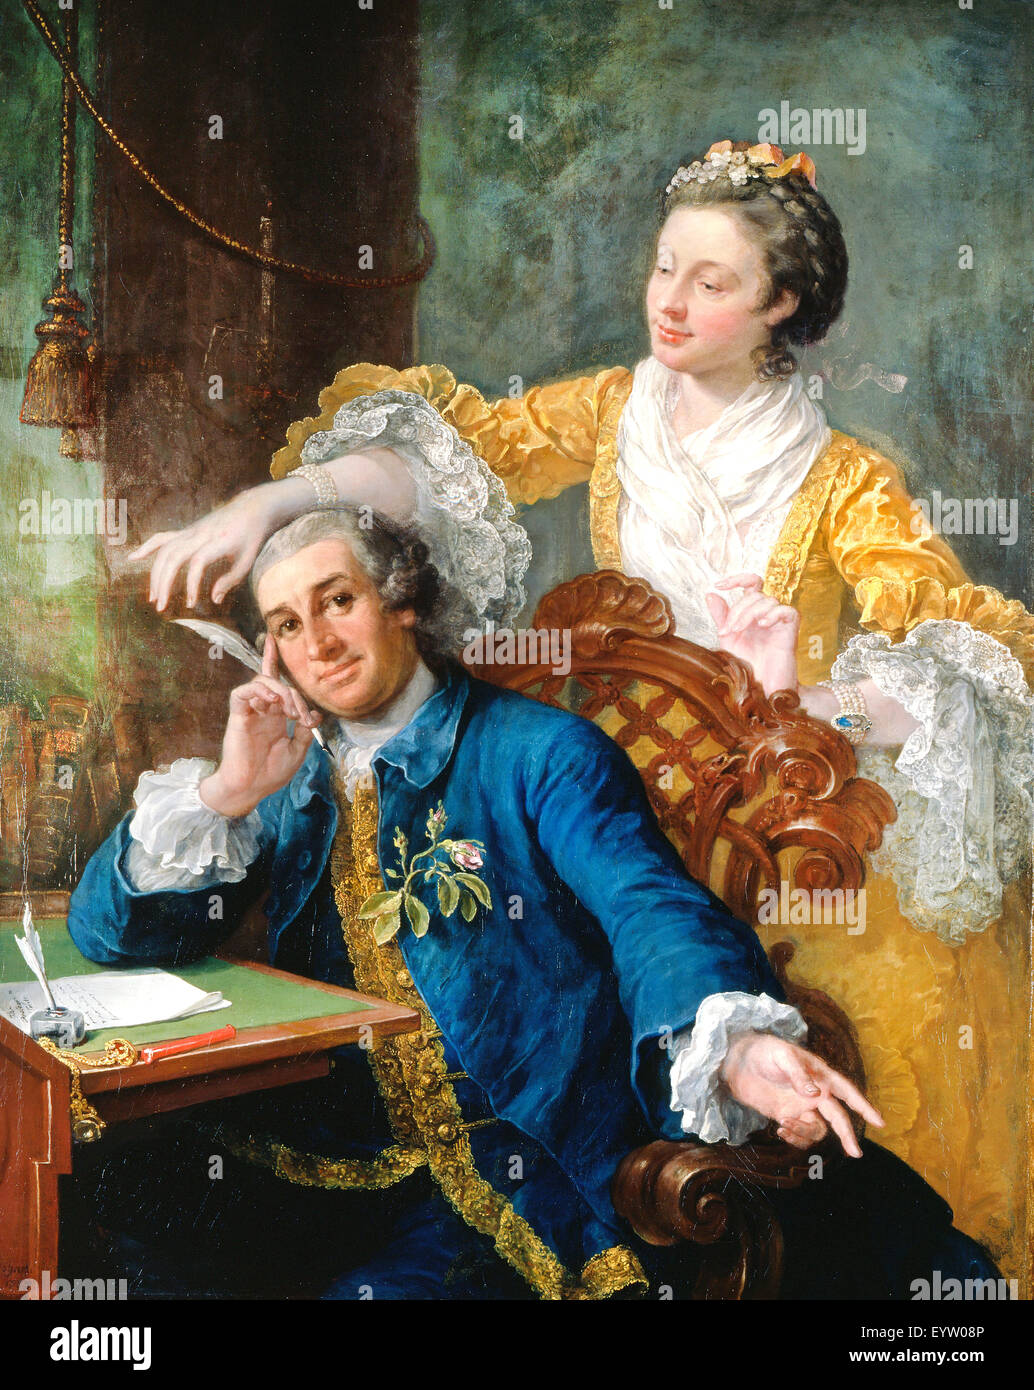 William Hogarth, David Garrick con su esposa Eva-Maria Veigel, 'La Violette' o 'Violetti'. 1757-1764 Óleo sobre lienzo. Royal Colle Foto de stock